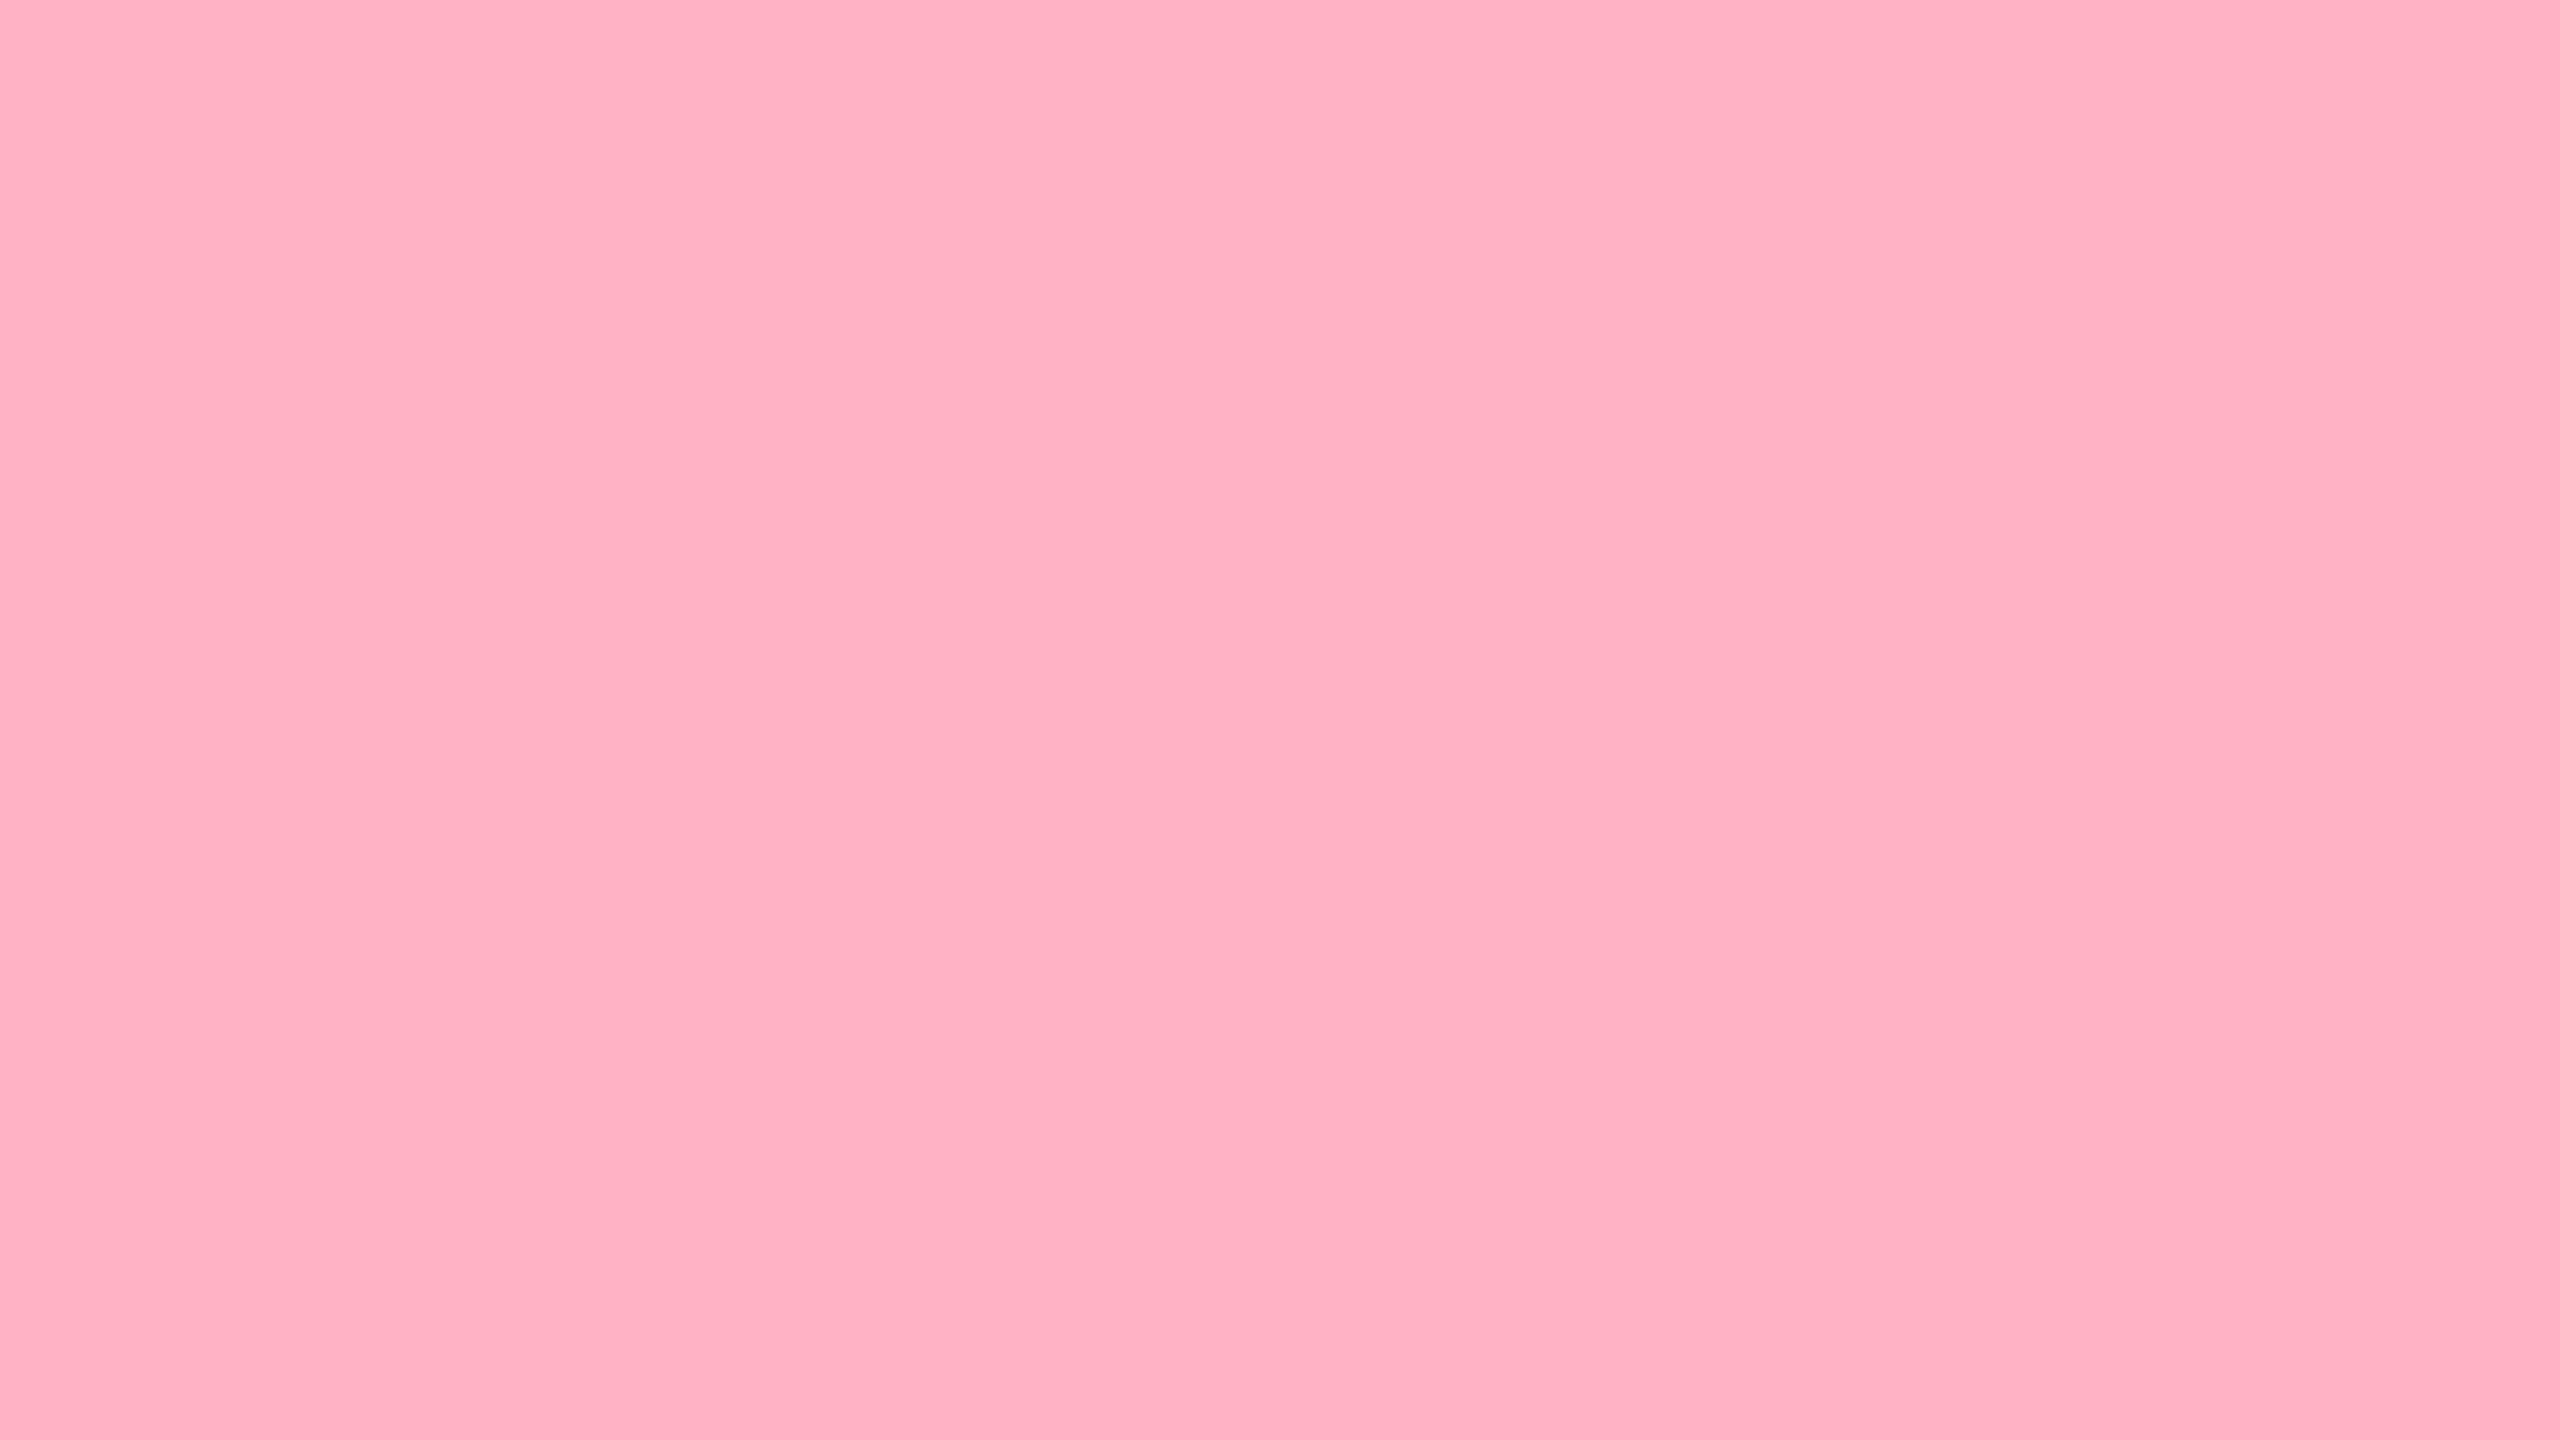 Solid Light Pink Landscape Background